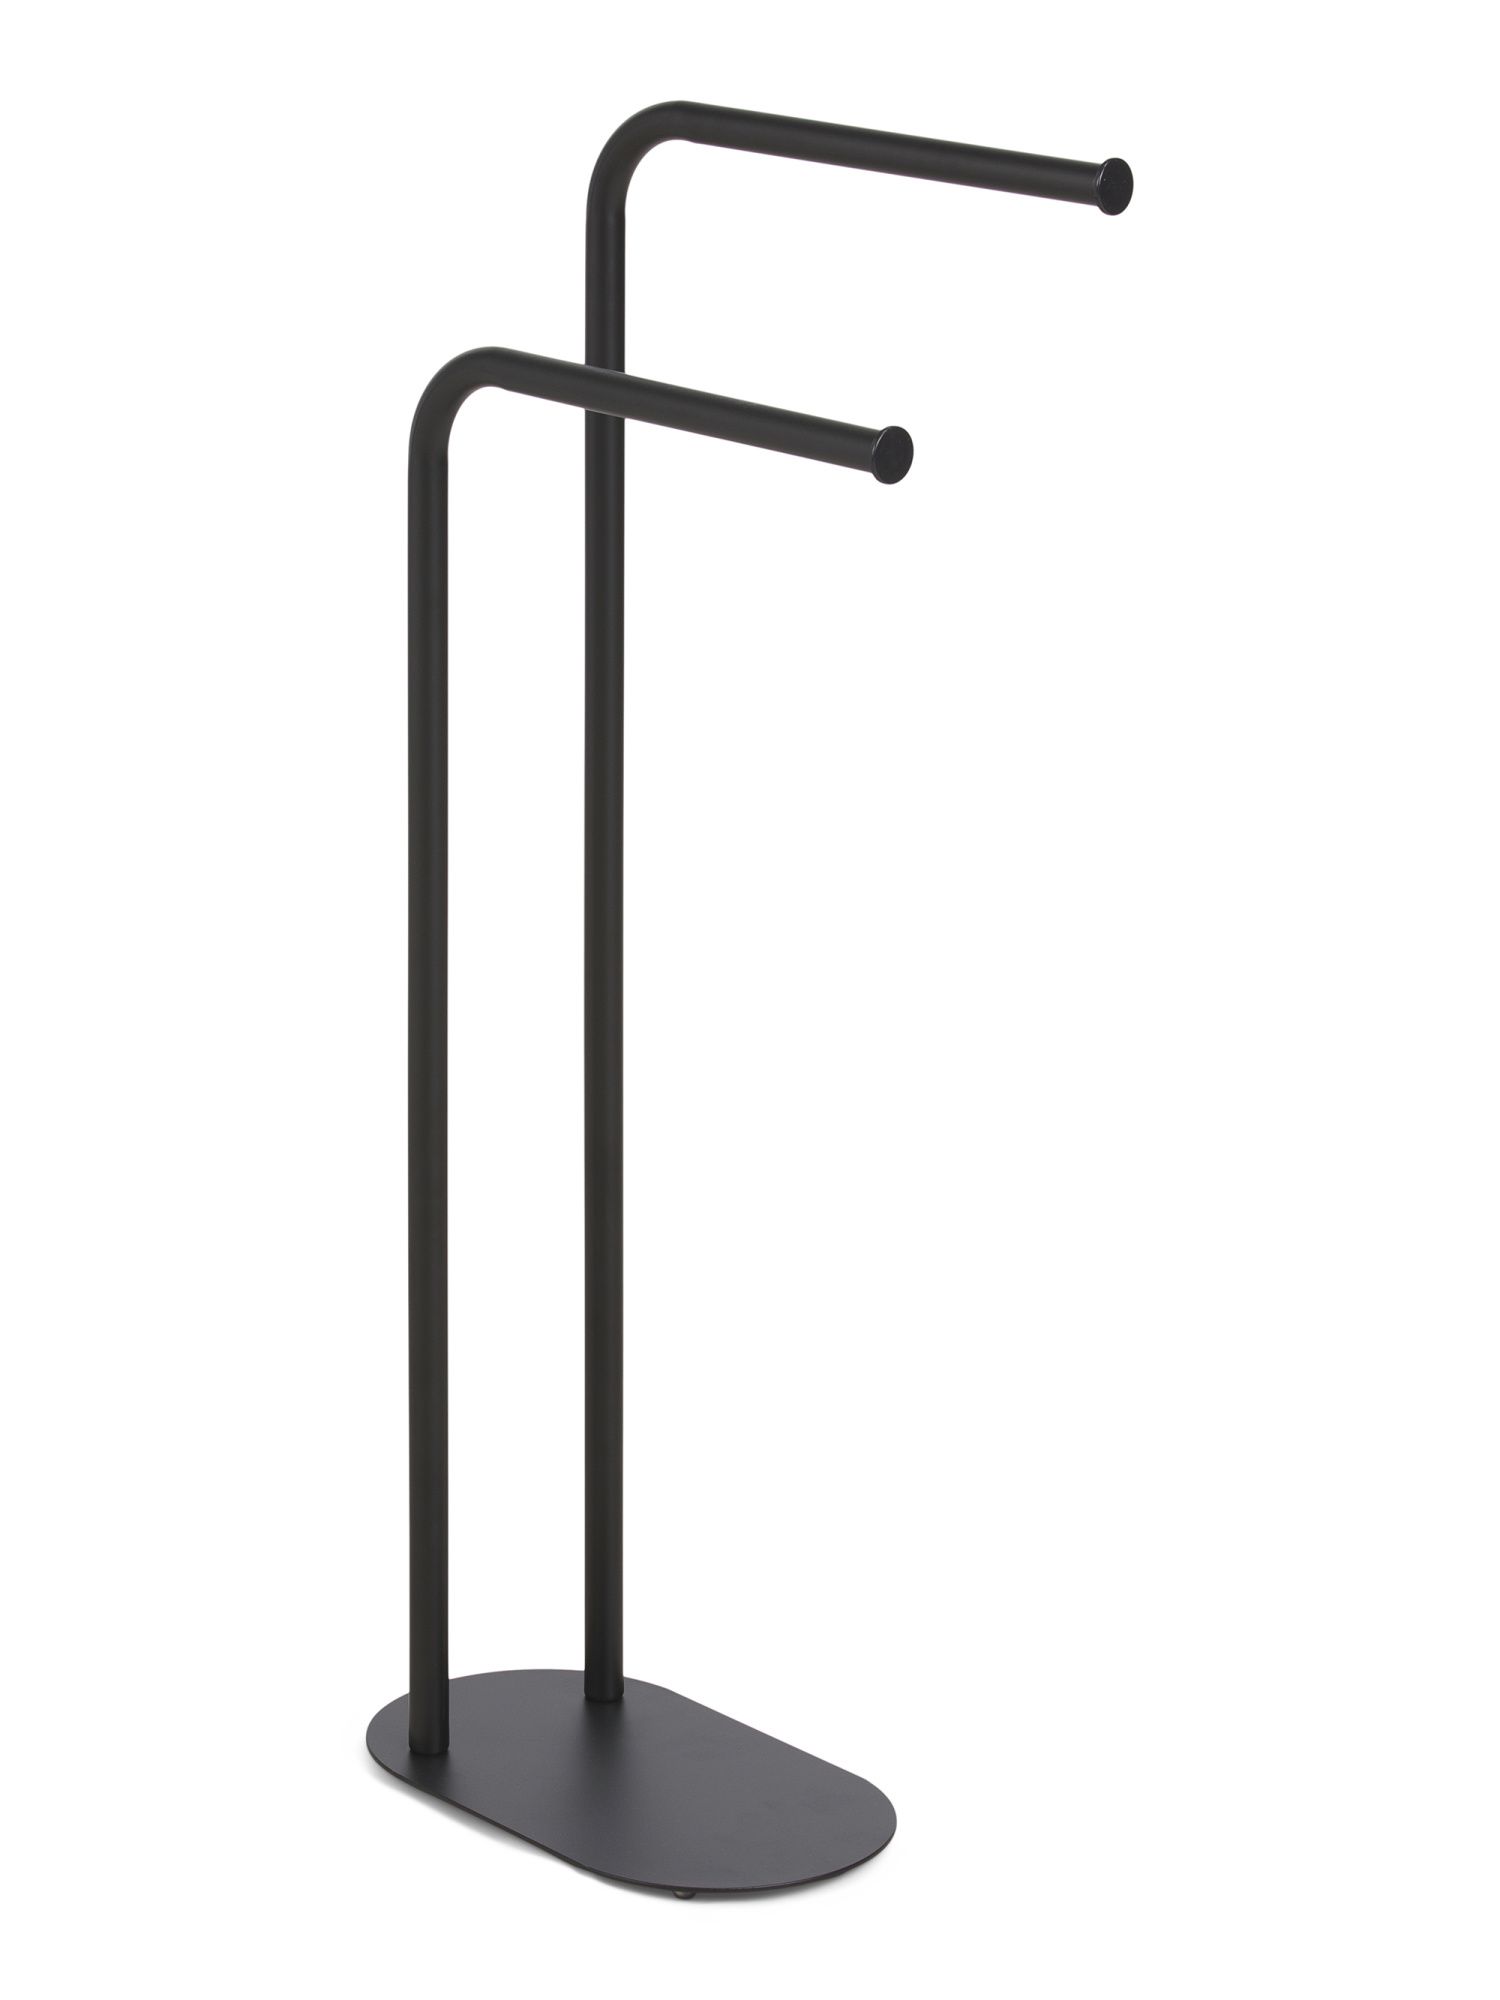 31x12 2 Tier Freestanding Towel Stand | TJ Maxx